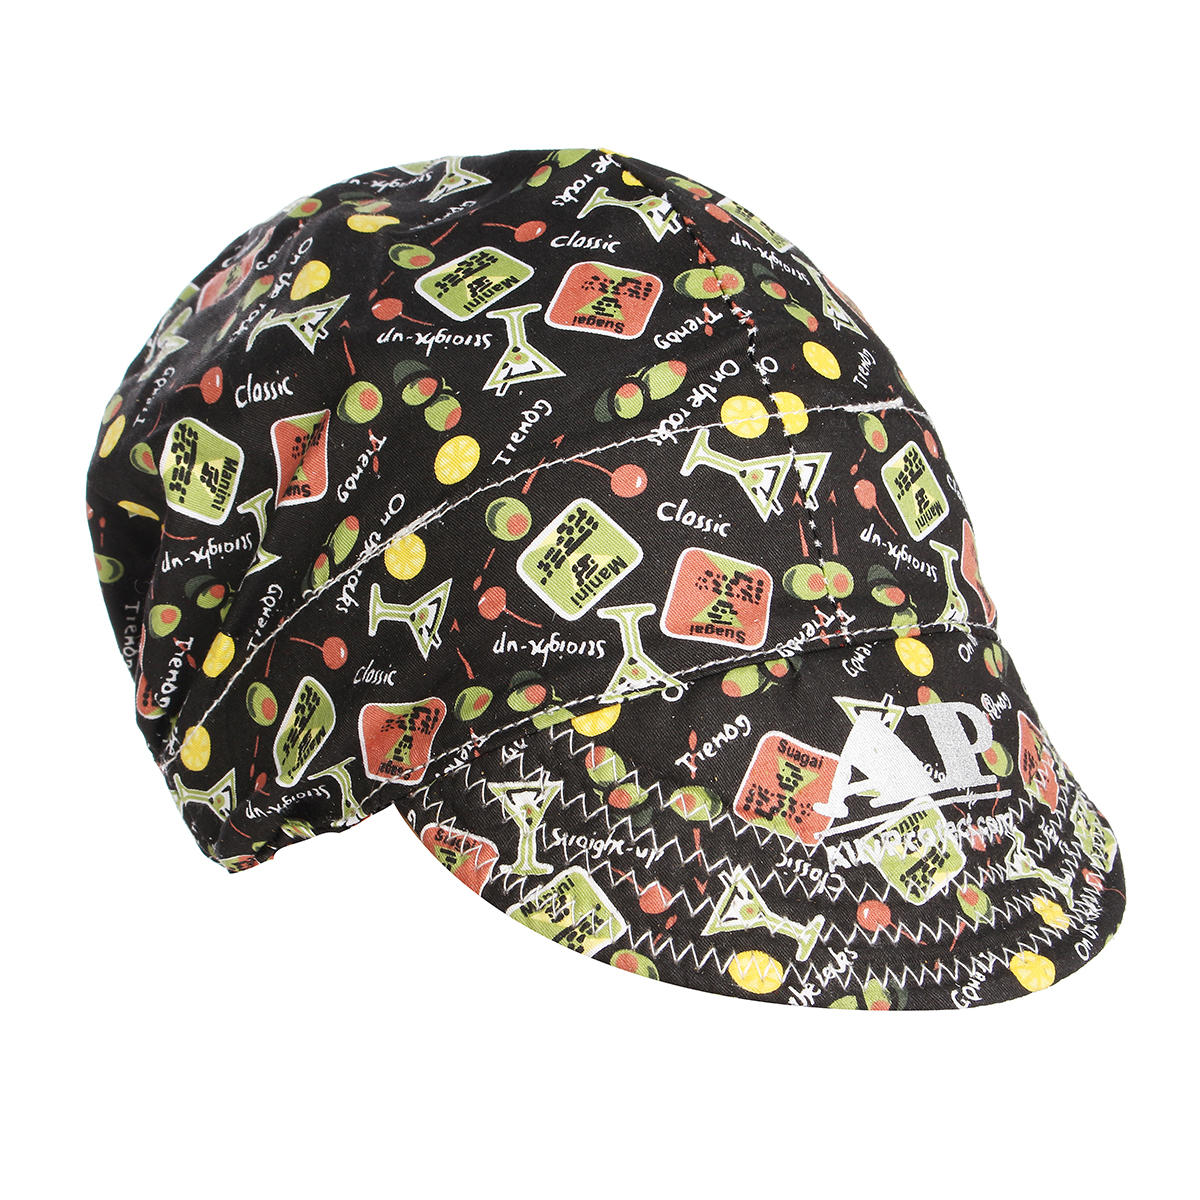 56cm to 64cm Adjustable Sweat Absorption Elastic Welding Hat Cap Helmet Soft Cotton Happy Hour